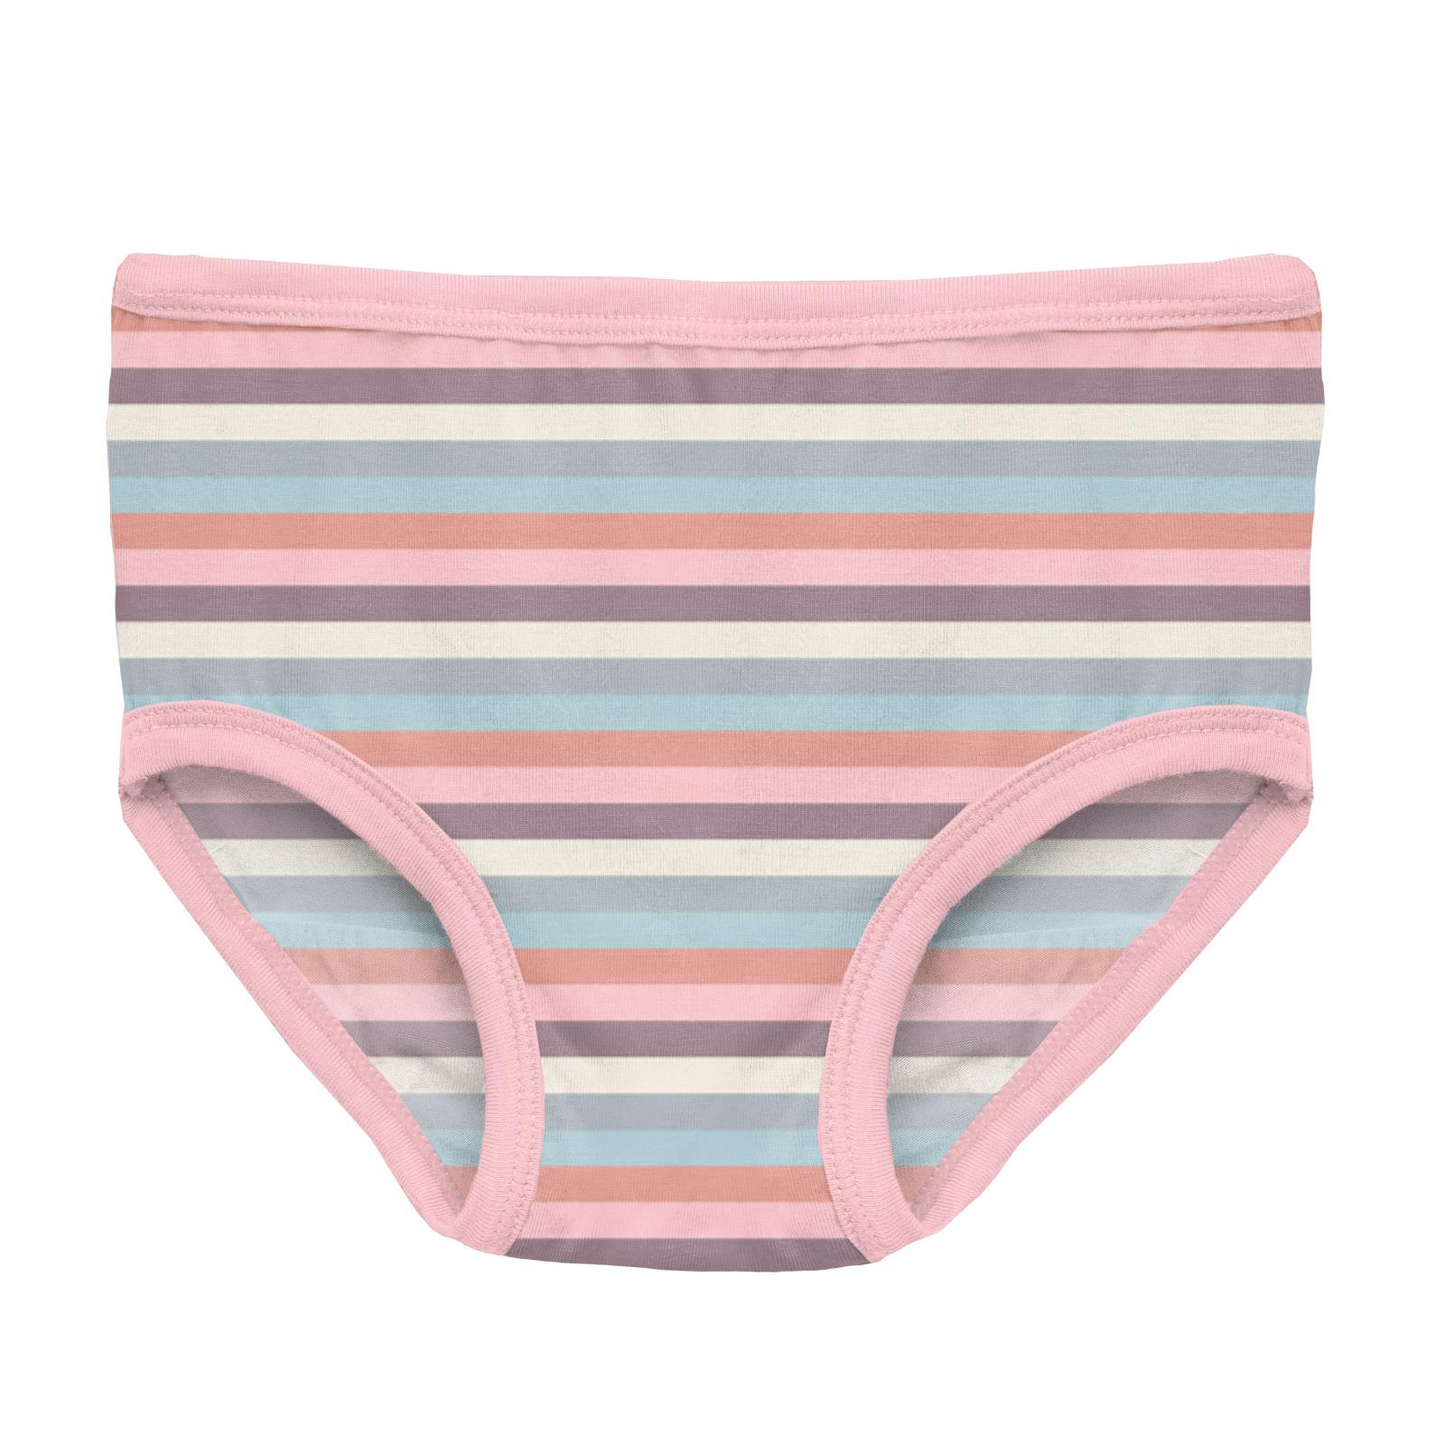 Print Girl's Underwear in Spring Bloom Stripe